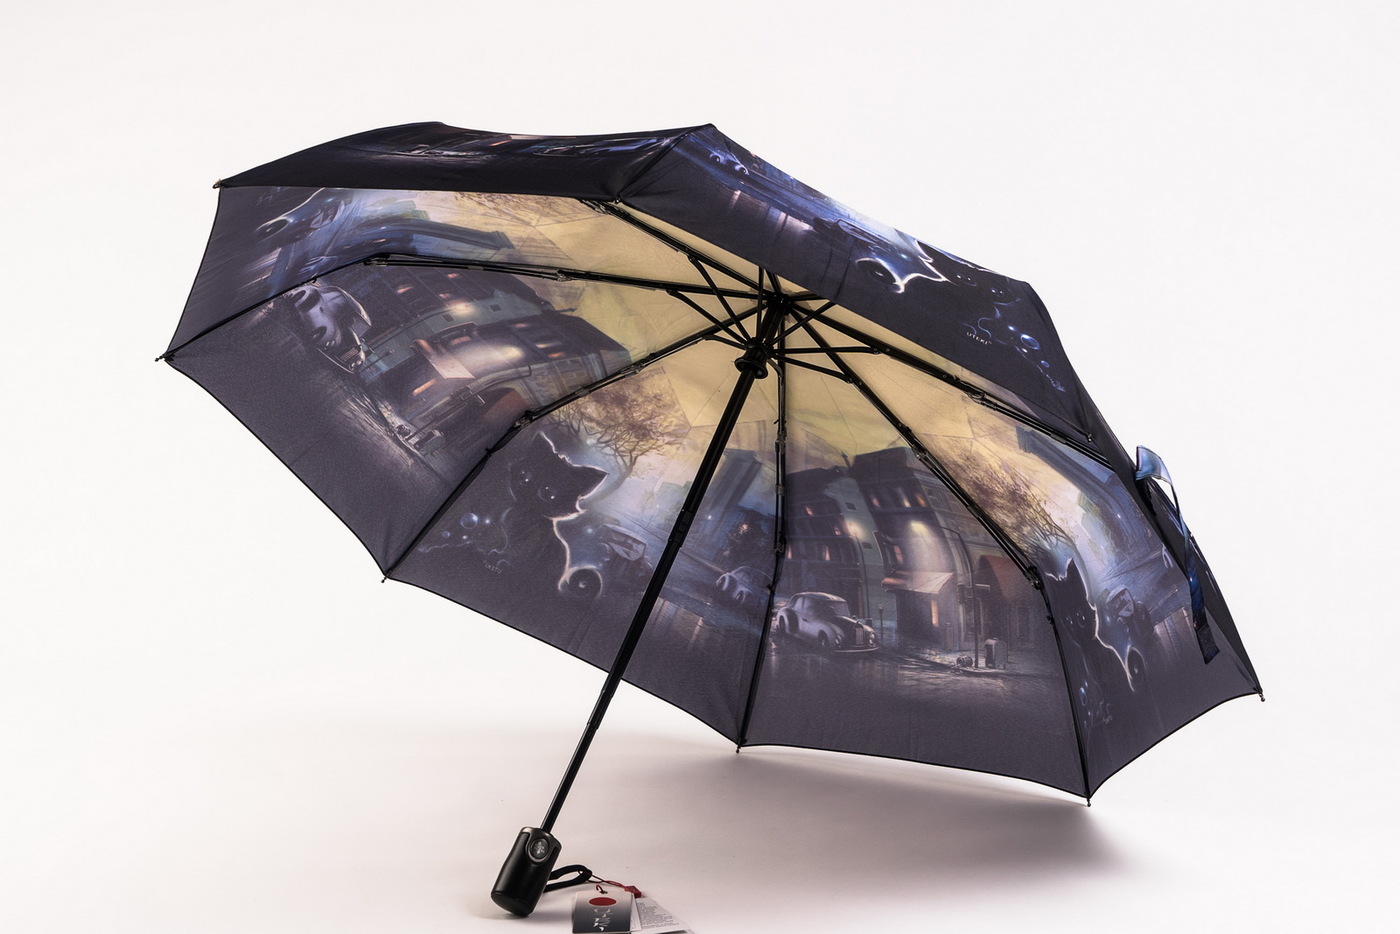  зонты самые прочные и надежные отзывы: Рейтинг лучших зонтов .